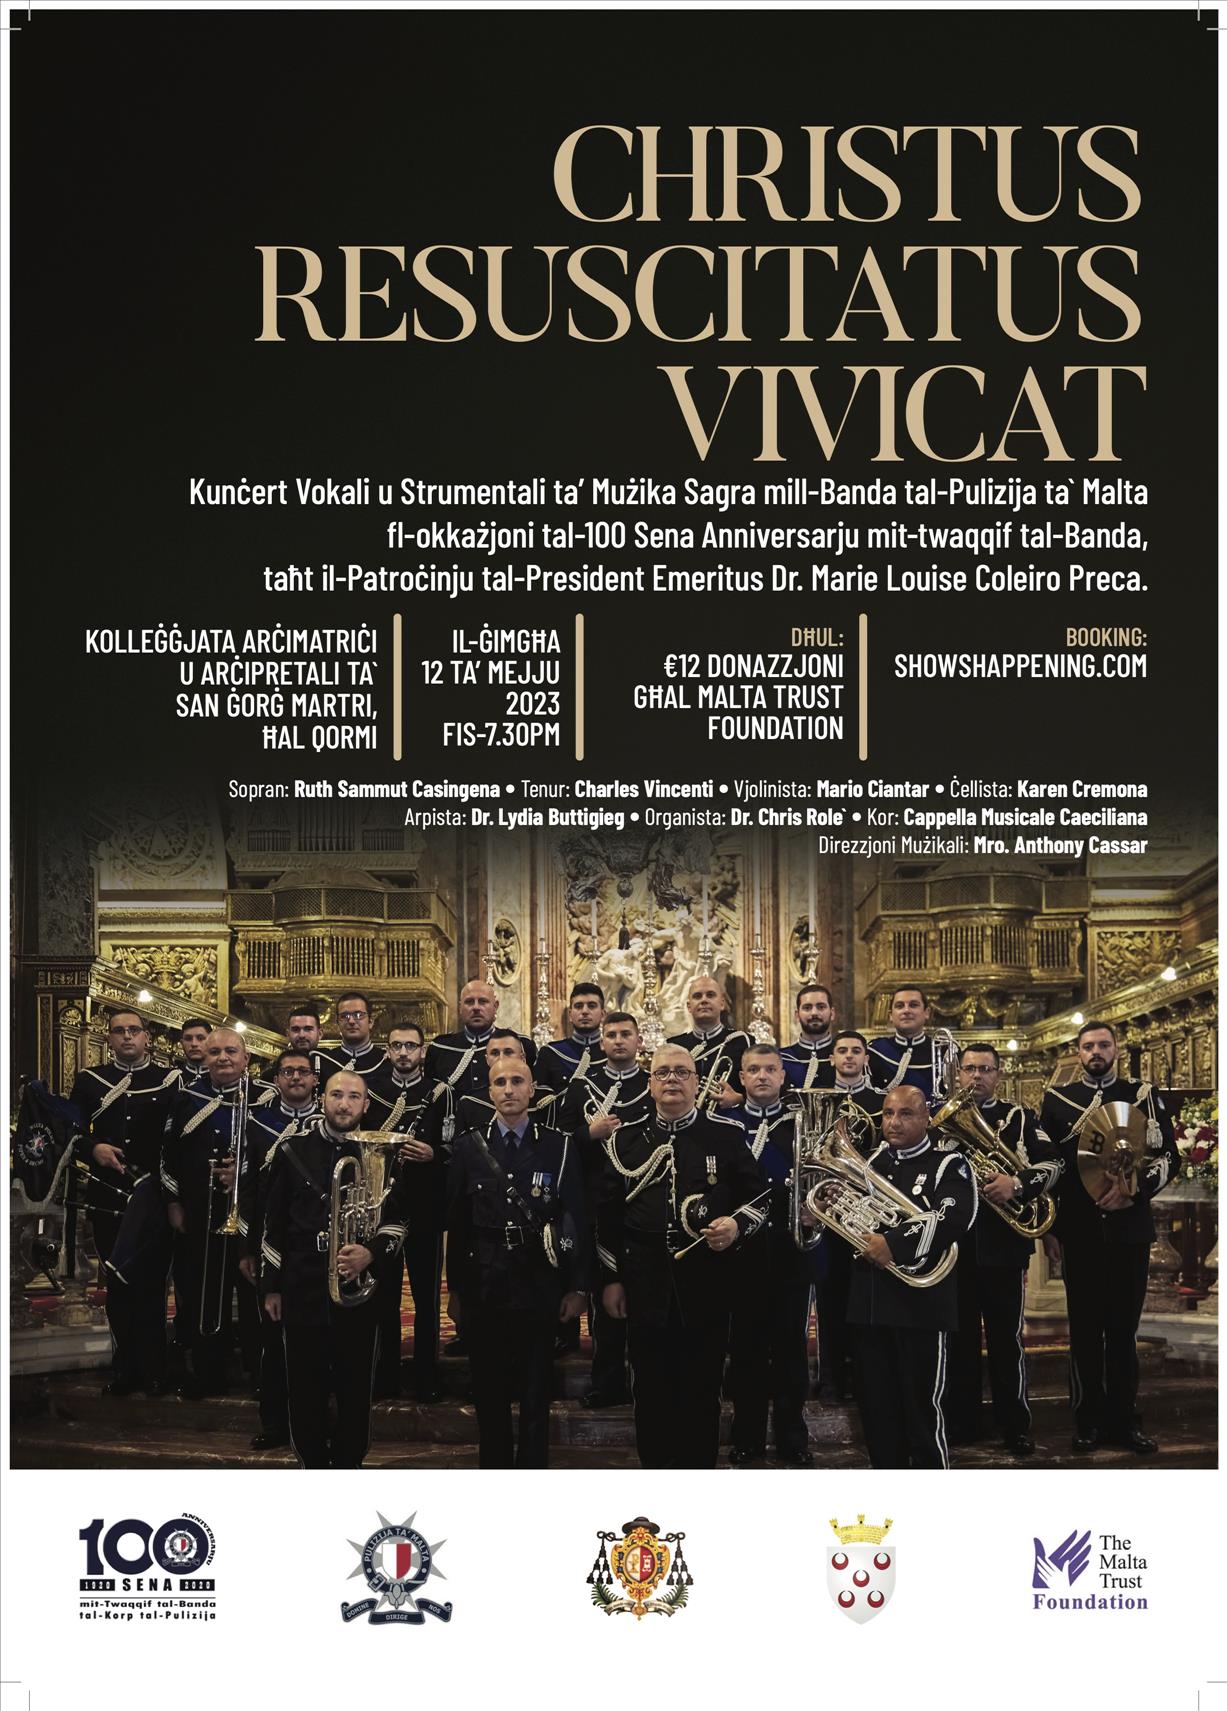 Christus Resuscitatus Vivicat - In aid of the Malta Trust Foundation May 12th poster